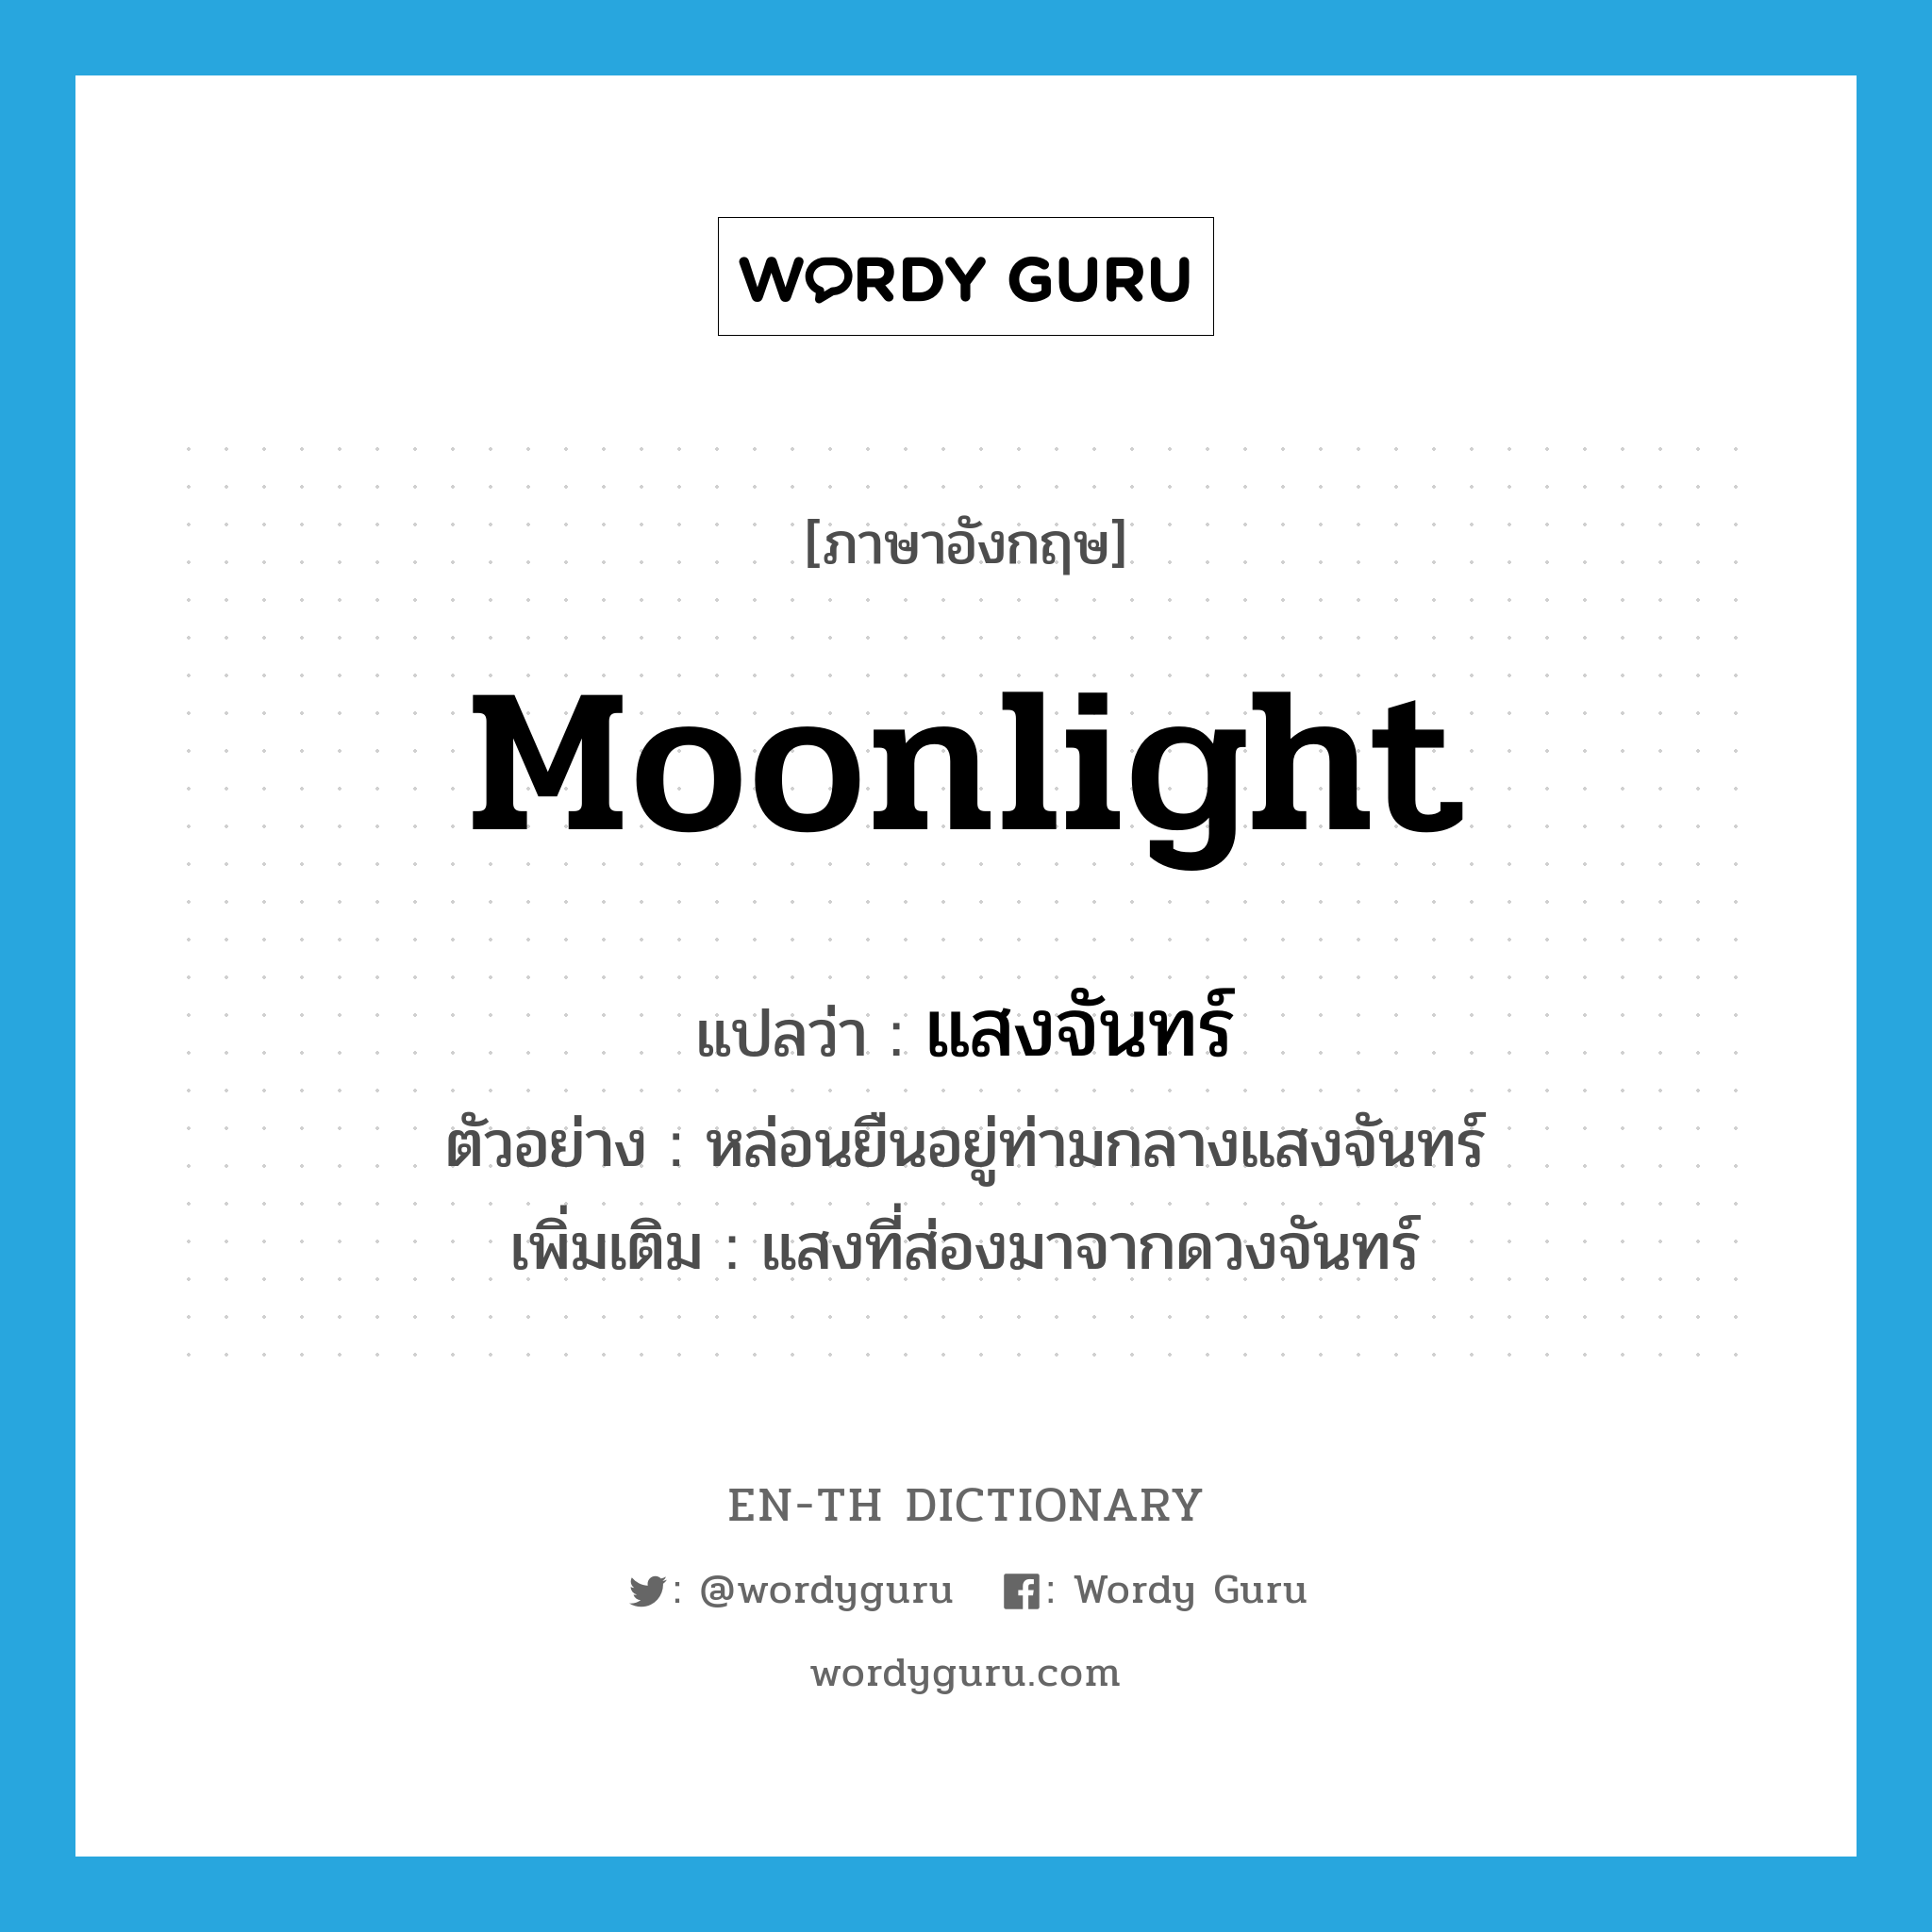 moonlight แปลว่า?, คำศัพท์ภาษาอังกฤษ moonlight แปลว่า แสงจันทร์ ประเภท N ตัวอย่าง หล่อนยืนอยู่ท่ามกลางแสงจันทร์ เพิ่มเติม แสงที่ส่องมาจากดวงจันทร์ หมวด N